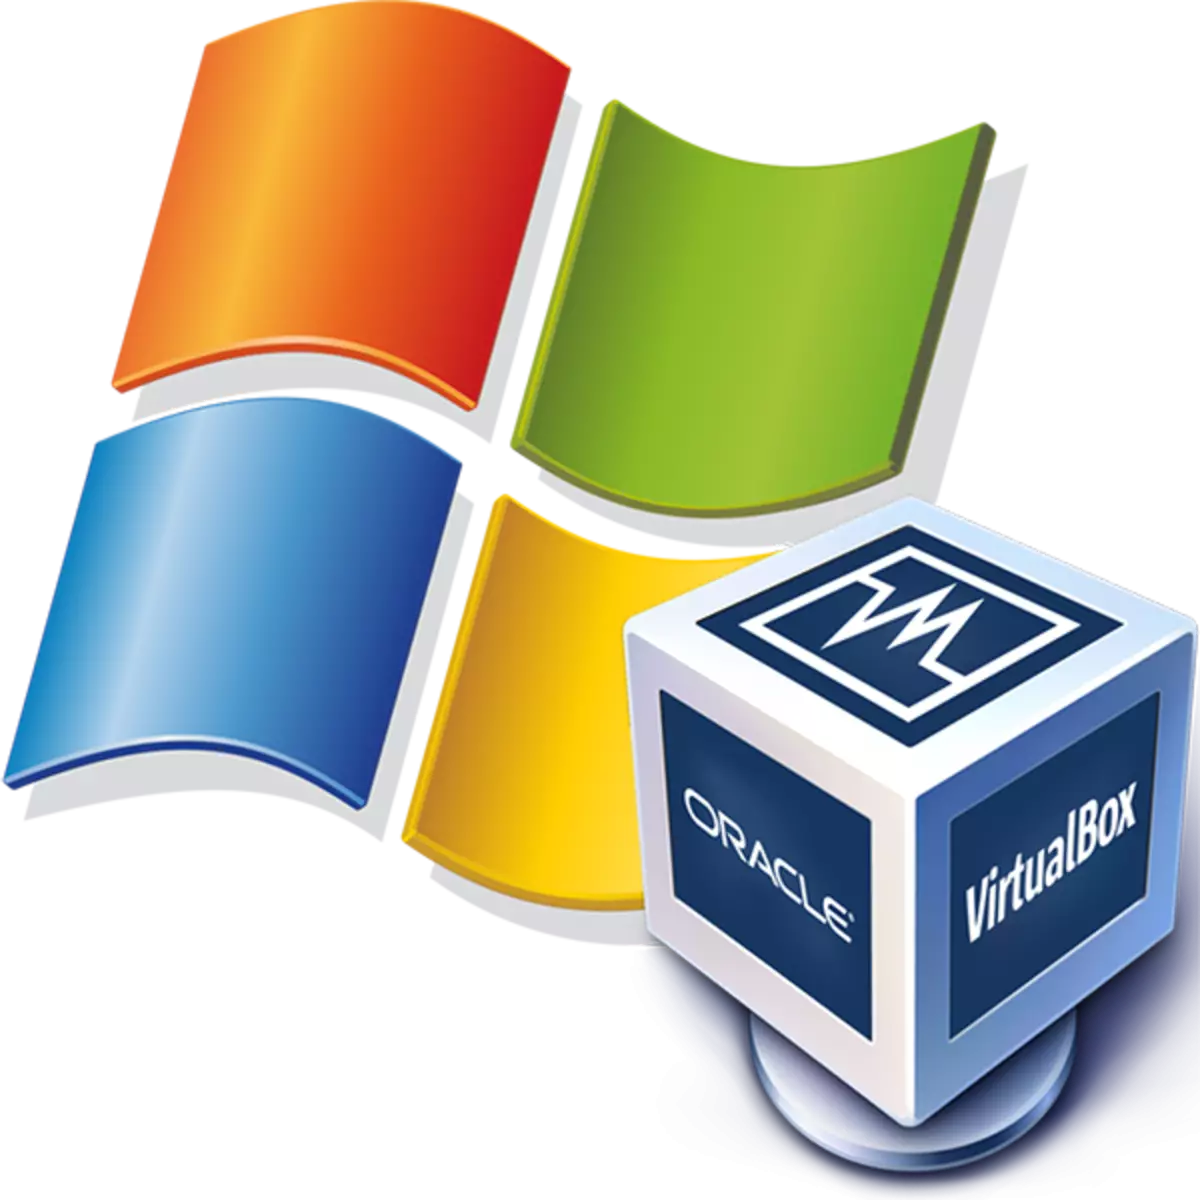 การติดตั้ง Windows XP บน VirtualBox